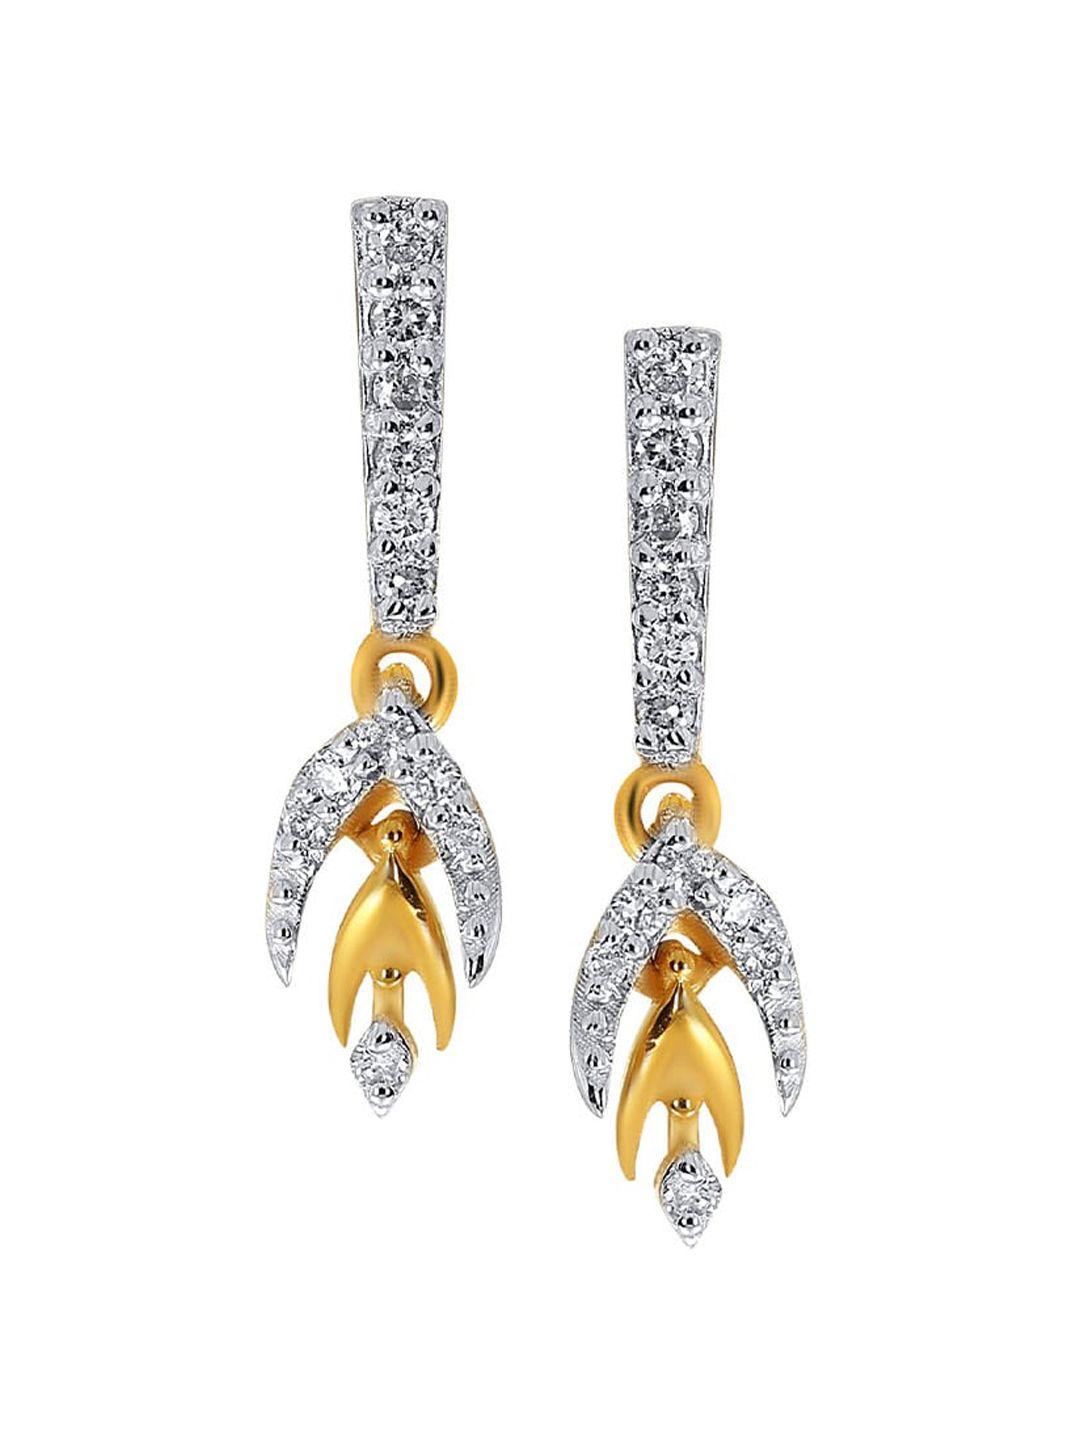 senco-dazzling-bud-18kt-gold-diamond-studded-drop-earrings-1.0gm